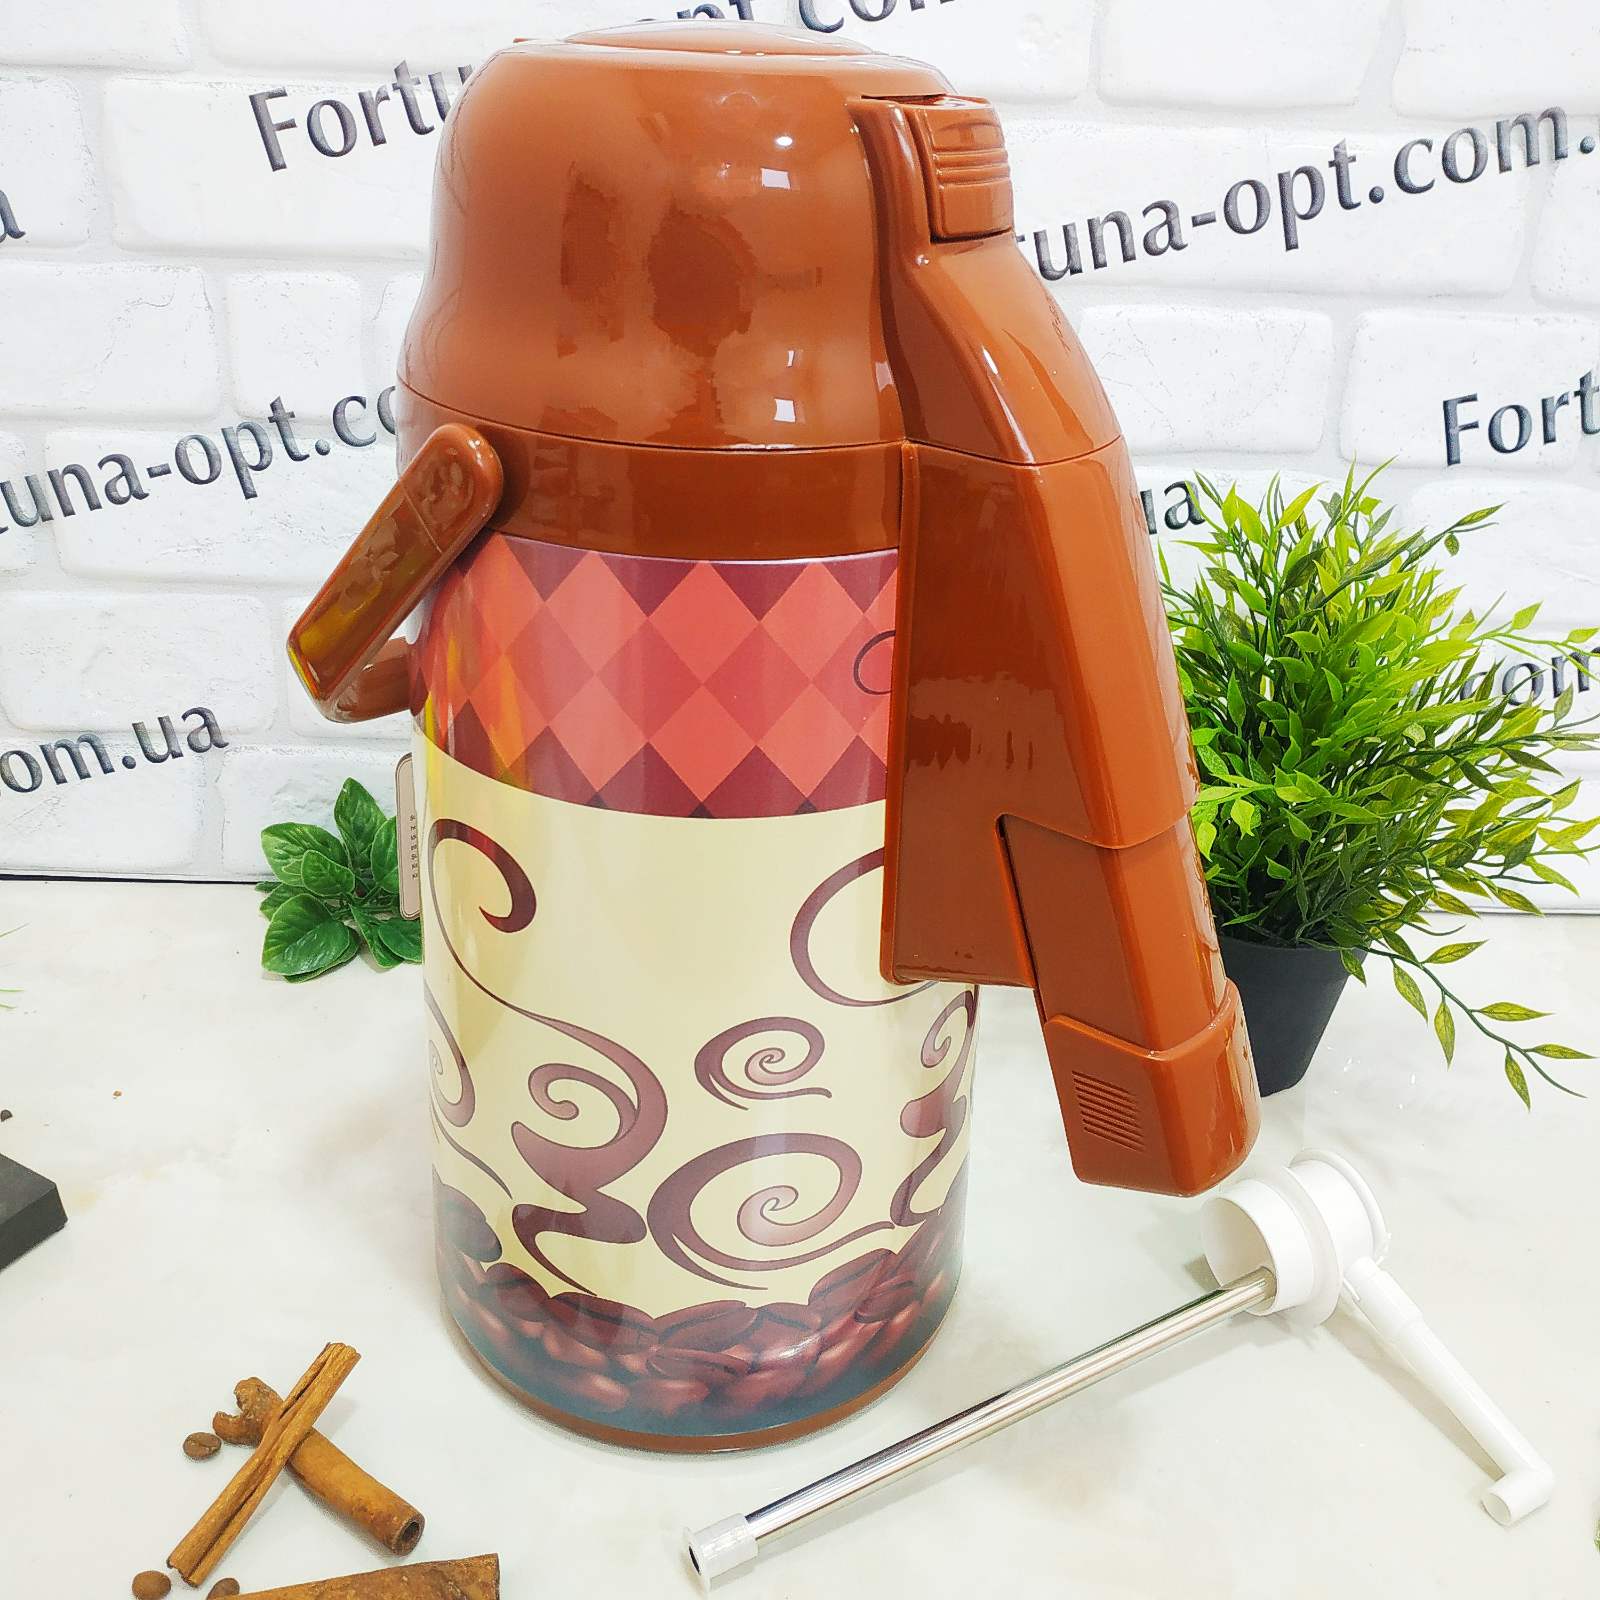 Термос Frico FRU - 265 - 3 л ➜ фото ➜ розн цена $18.86 - Интернет-магазин ✅ Fortuna-opt.com.ua. ✅ 